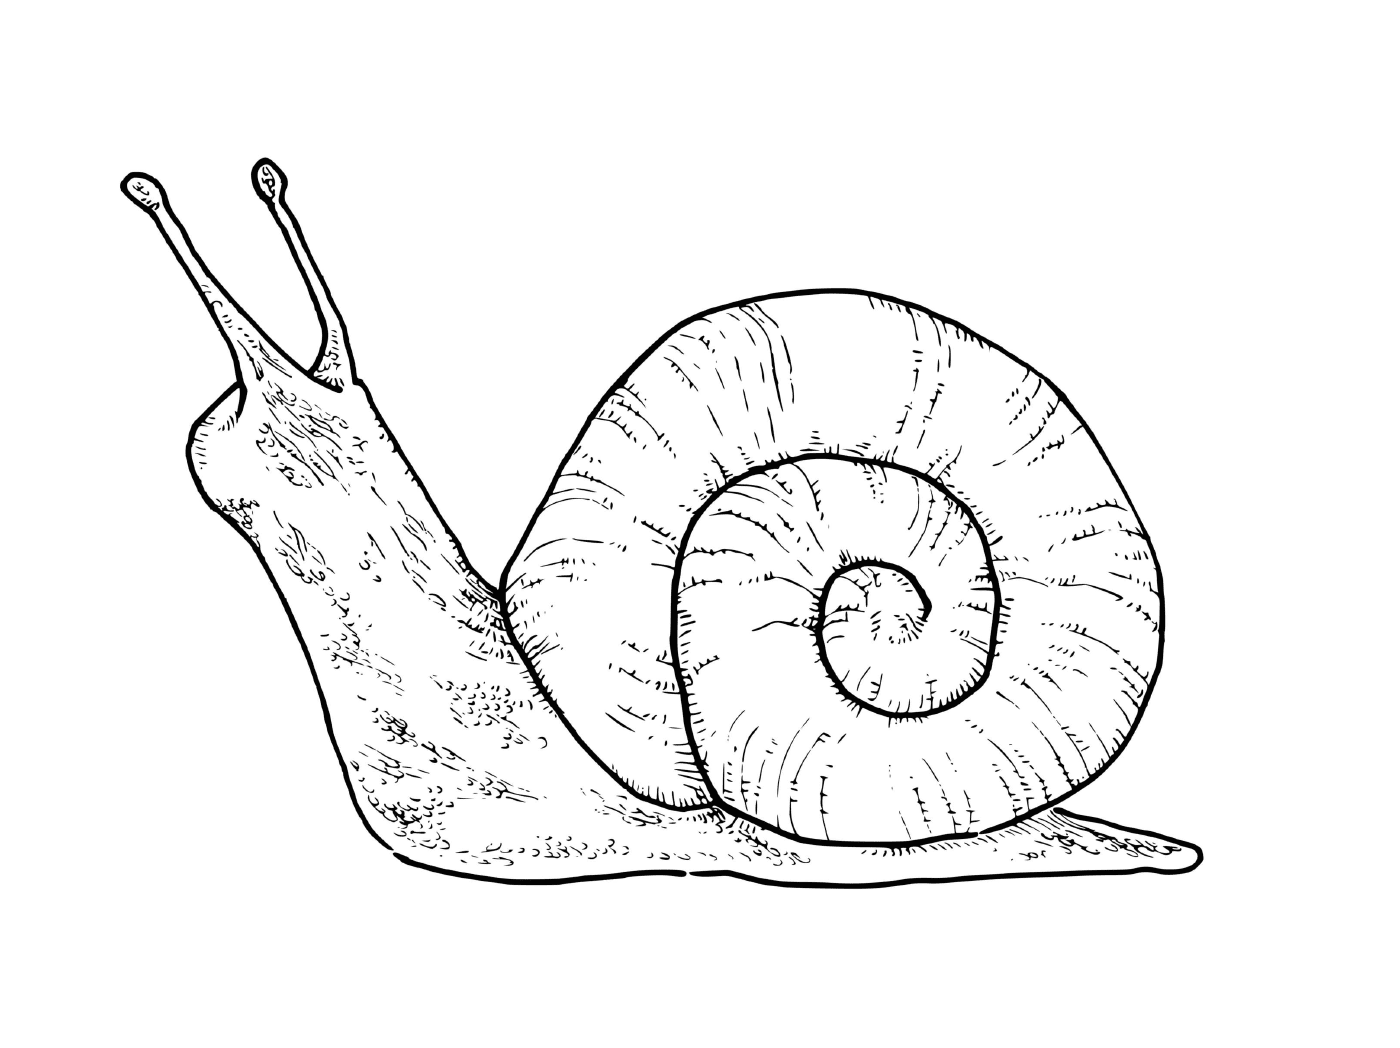   Un escargot terrestre tranquille sur le sol 